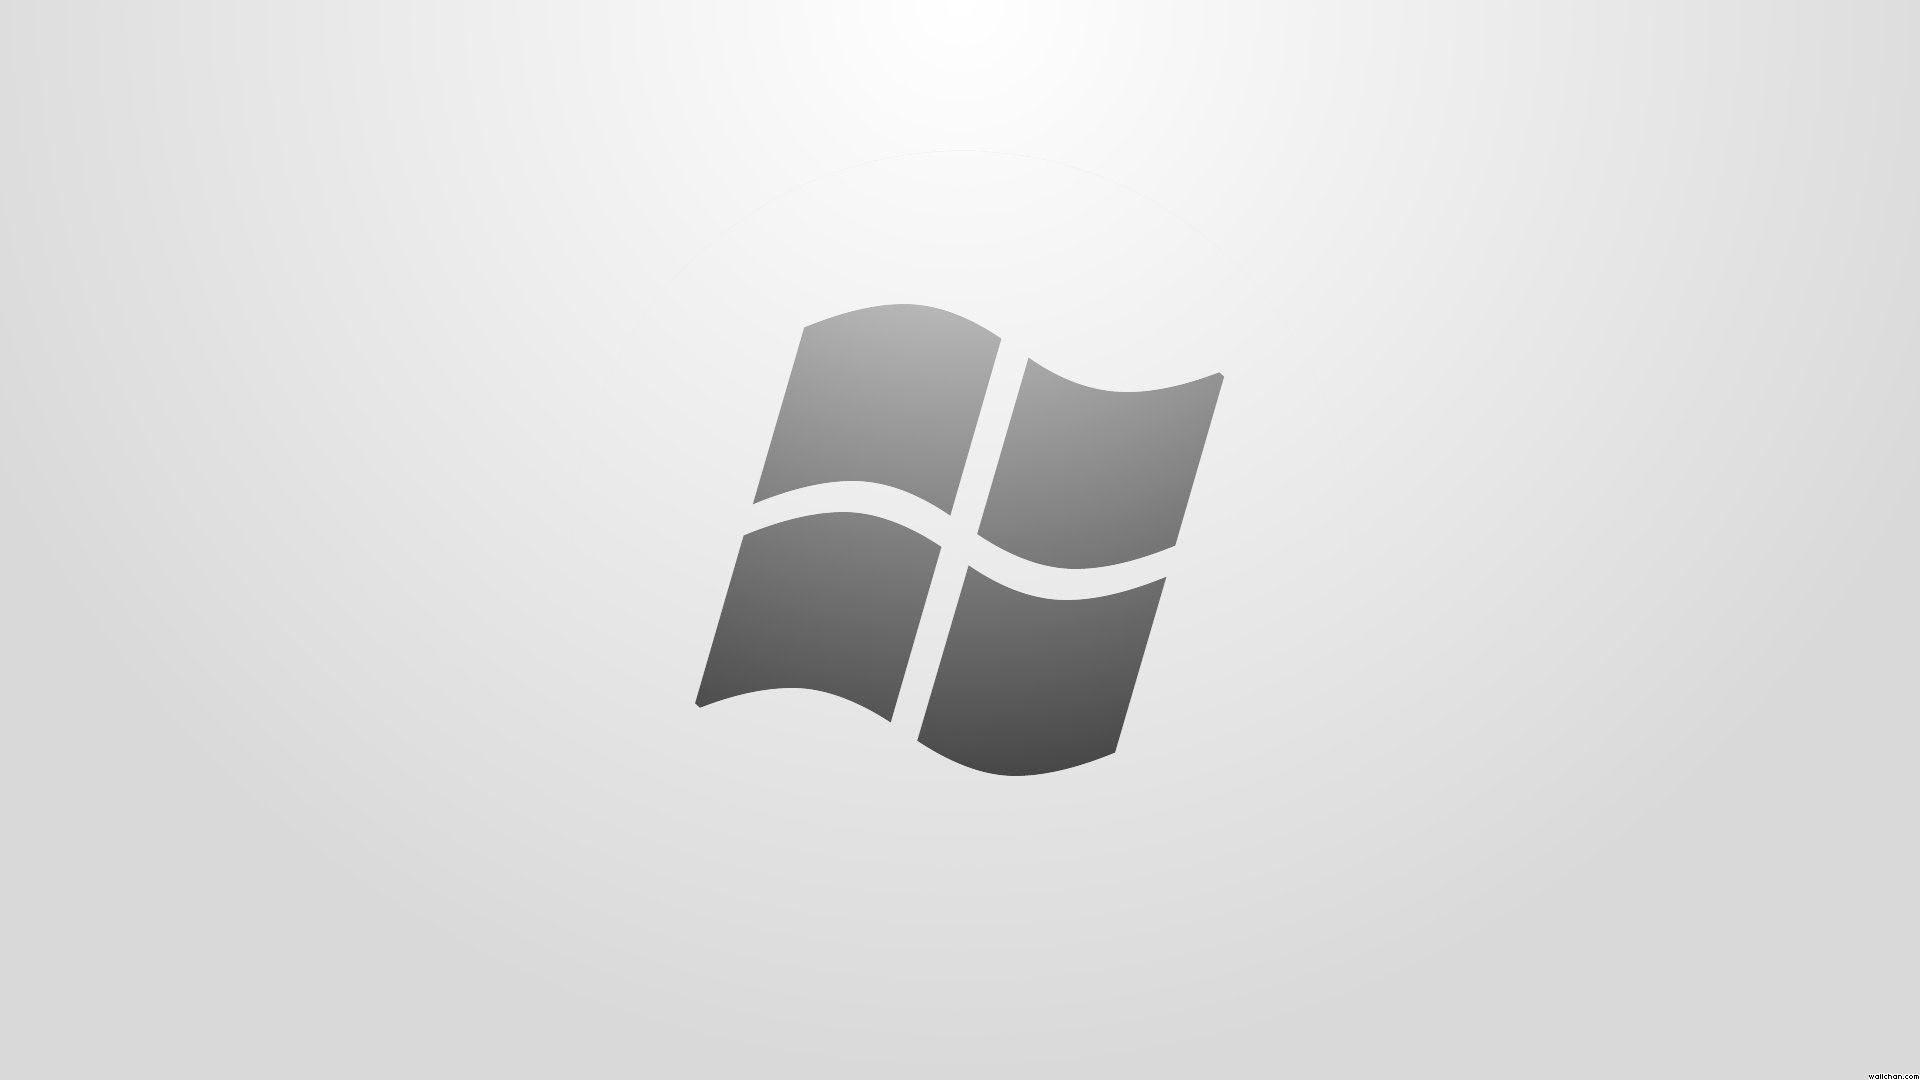 Alfa img - Showing > Windows Logo White Background